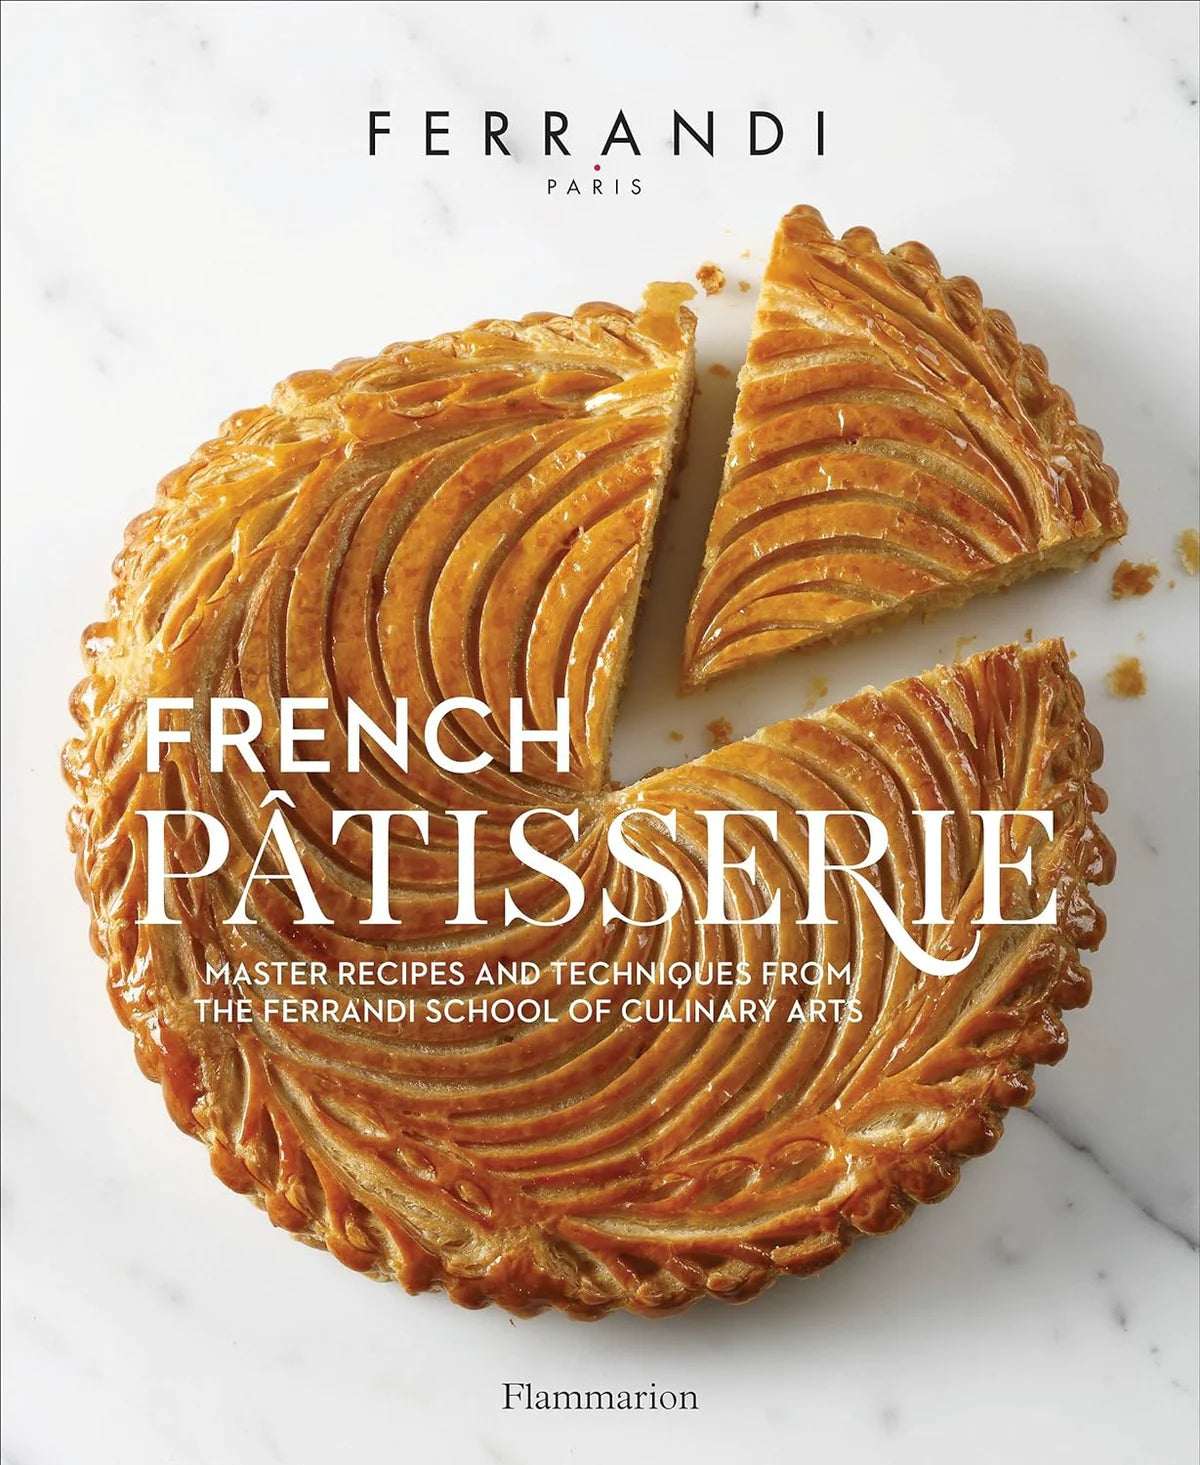 French Patisserie by Ferrandi